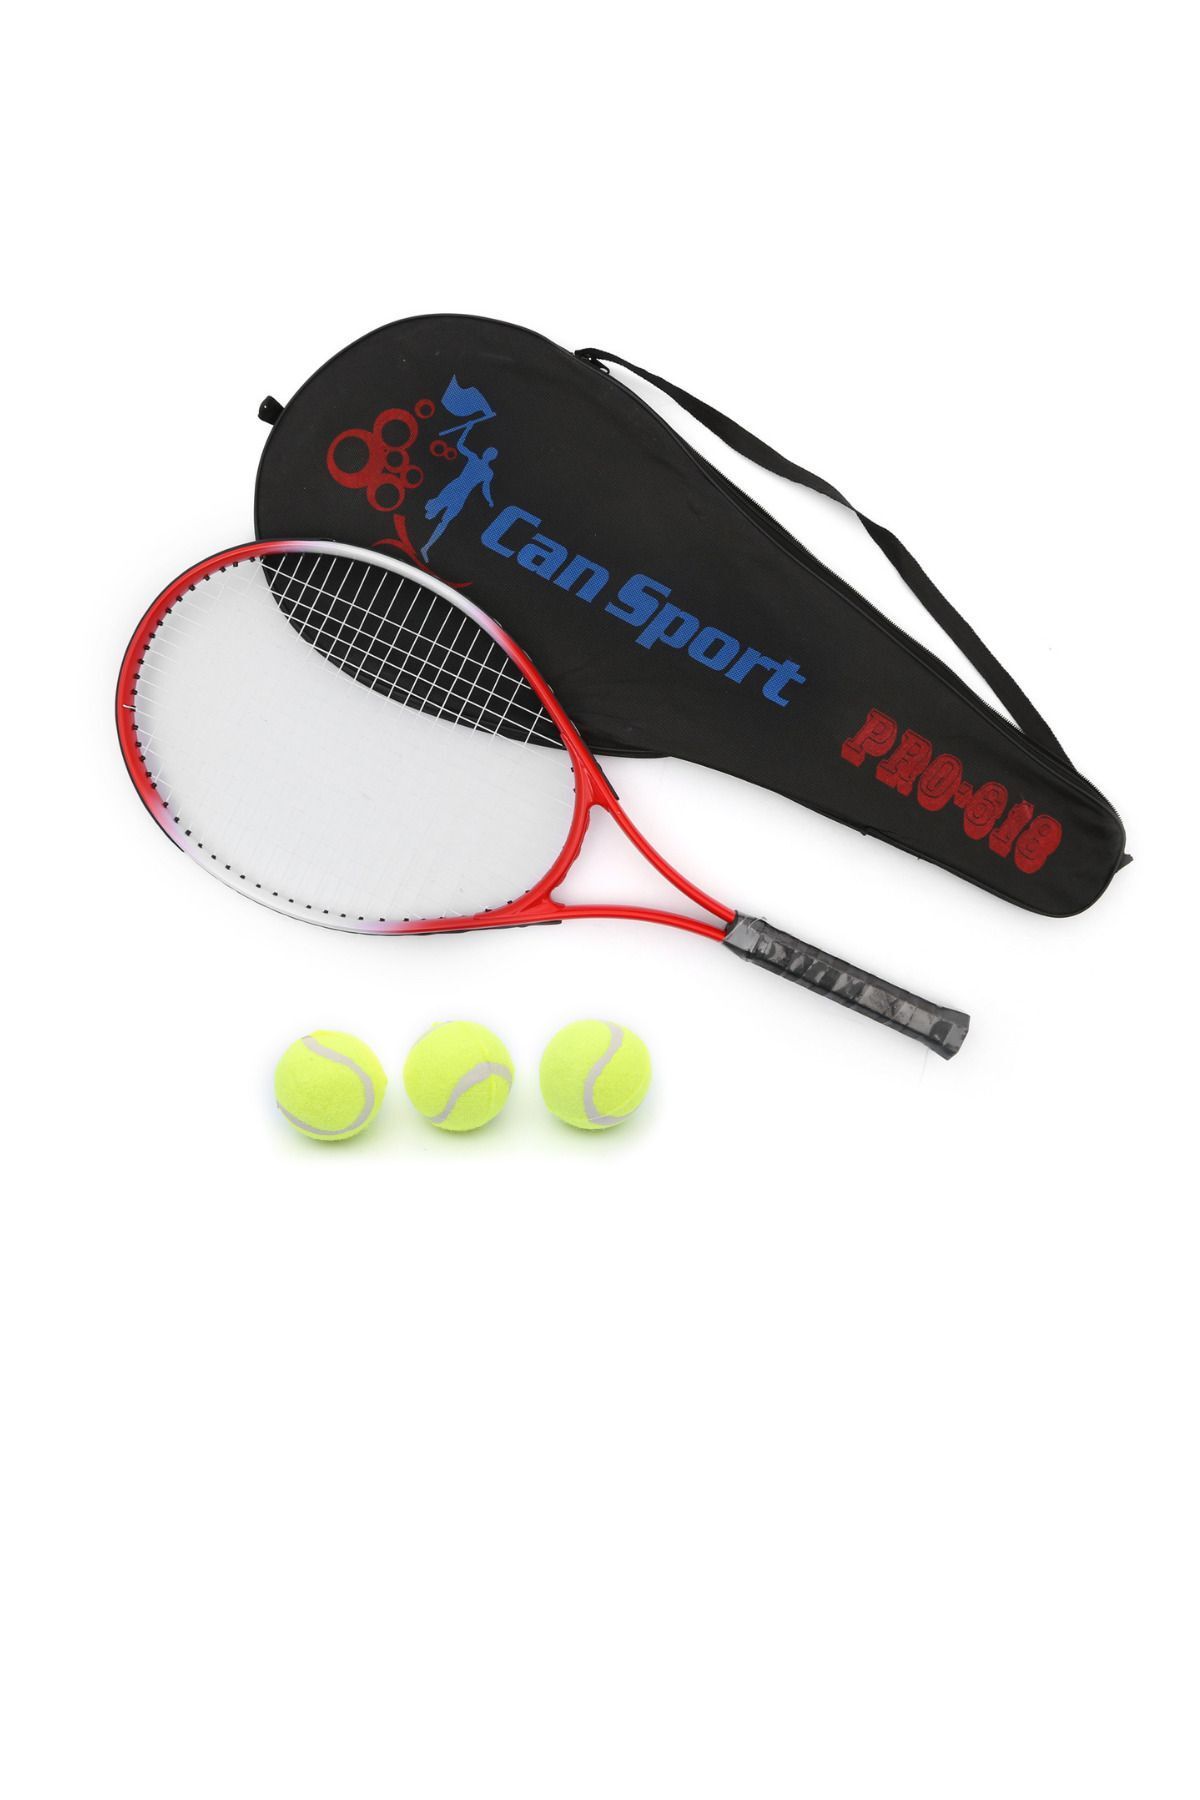 İMVULA Yetişkin Kort Başlangıç Seviye Tenis Raketi Seti Taşıma Çantası